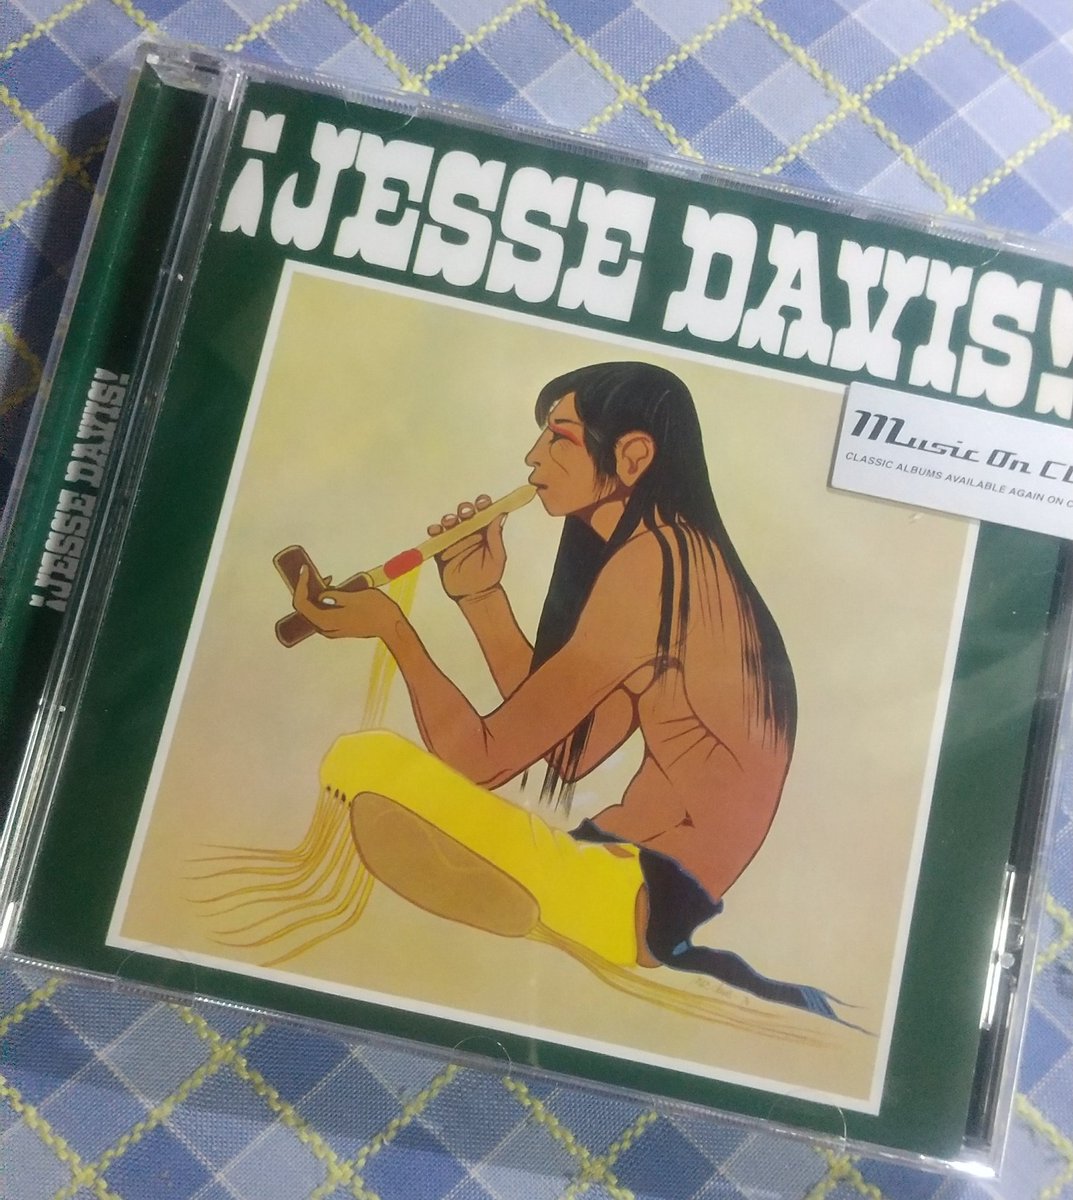 全然詳しくないのですが、有名盤なので聴いてみたかった「ジェシ・デイヴィスの世界」。輸入盤ですが、日本で販売されるのは15年ぶりとの事。ジェシ・デイヴィスと愉快な仲間たちといった趣。楽しい気分になれますね。気に入りました。聴けて良かった！